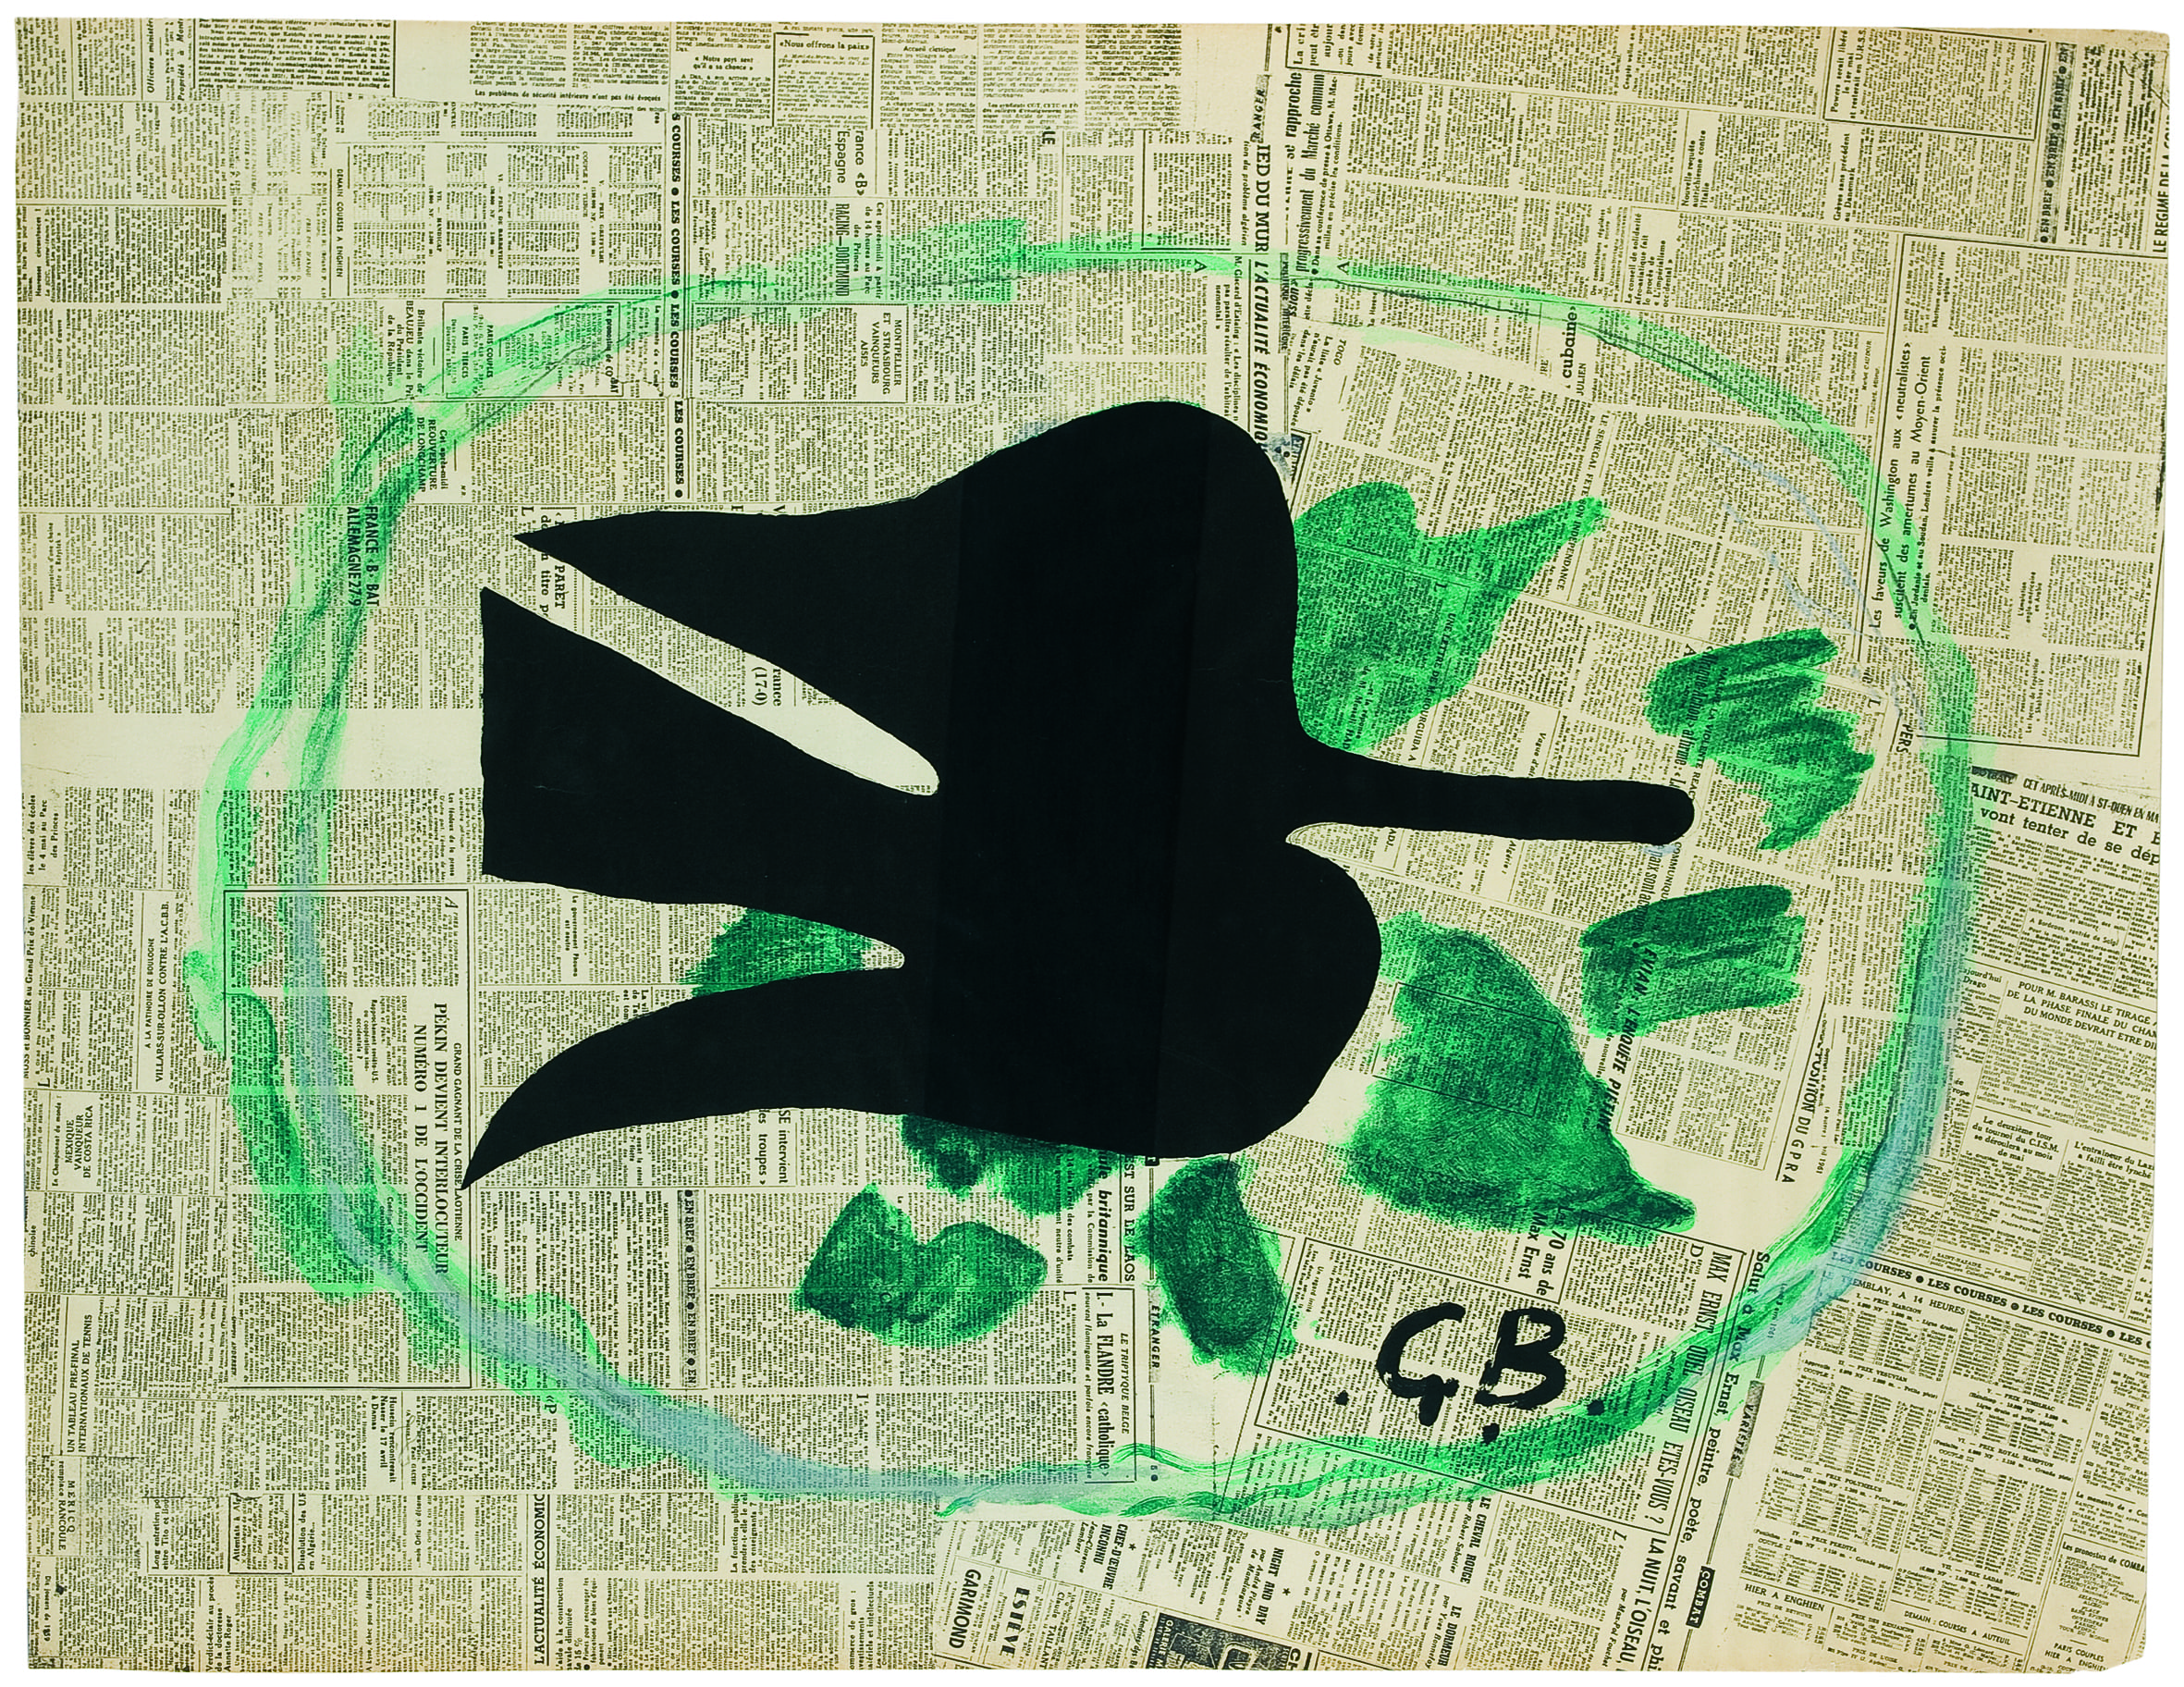 Georges Braque, L’Uccello nel fogliame, 1961, litografia a colori su carta Rives applicata su cartone, 80,5 x 105 cm, Kunstmuseum Pablo Picasso Münster © Georges Braque by SIAE 2019